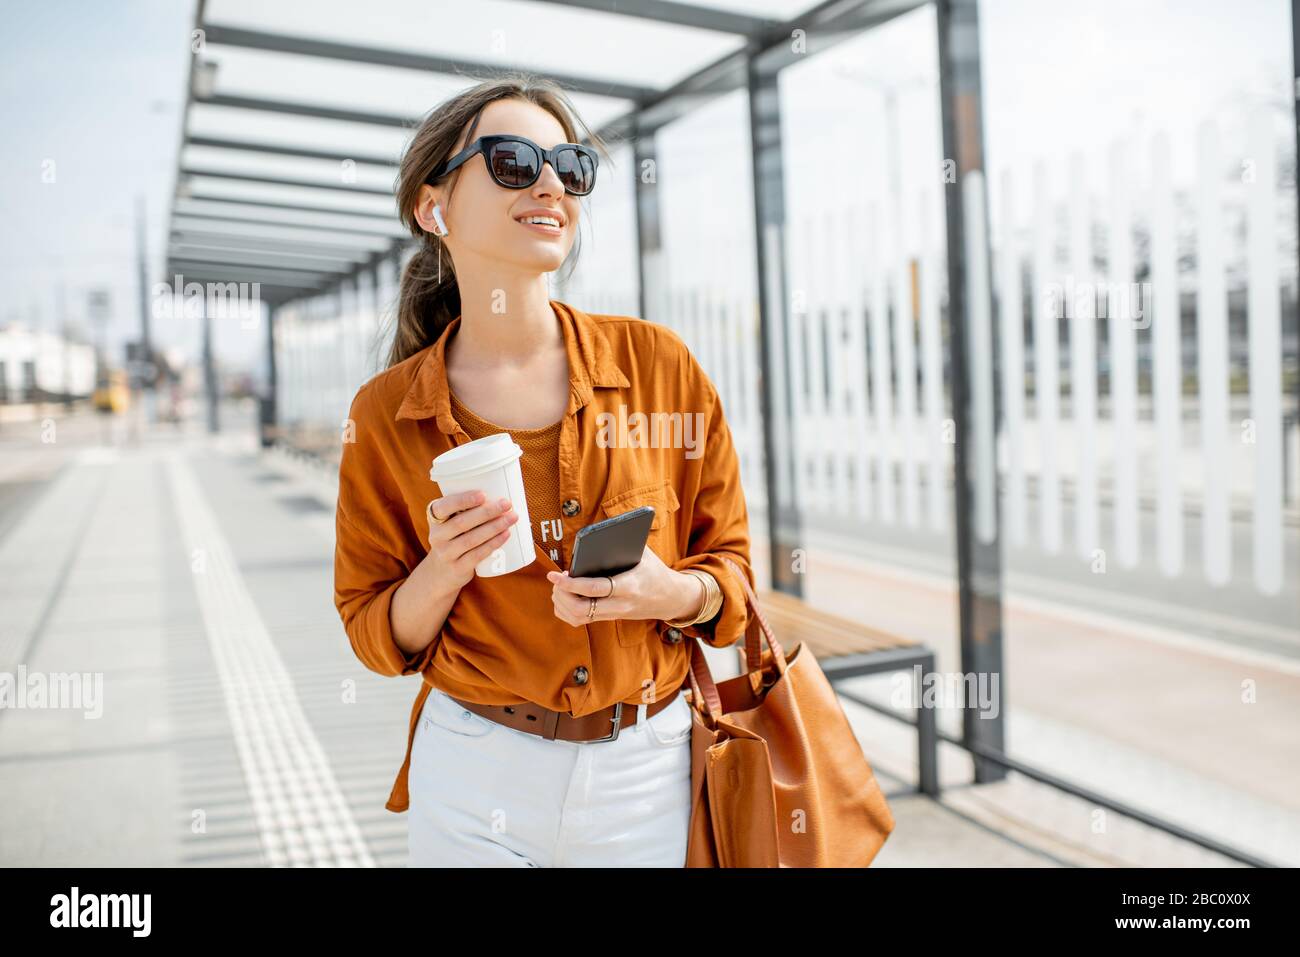 Lifestyle-Porträt einer jungen und fröhlichen Frau, die mit Telefon und Kaffeetasse auf den öffentlichen Verkehrsmitteln steht, hält im Freien. Städtisches Geschäftsreise-Konzept Stockfoto